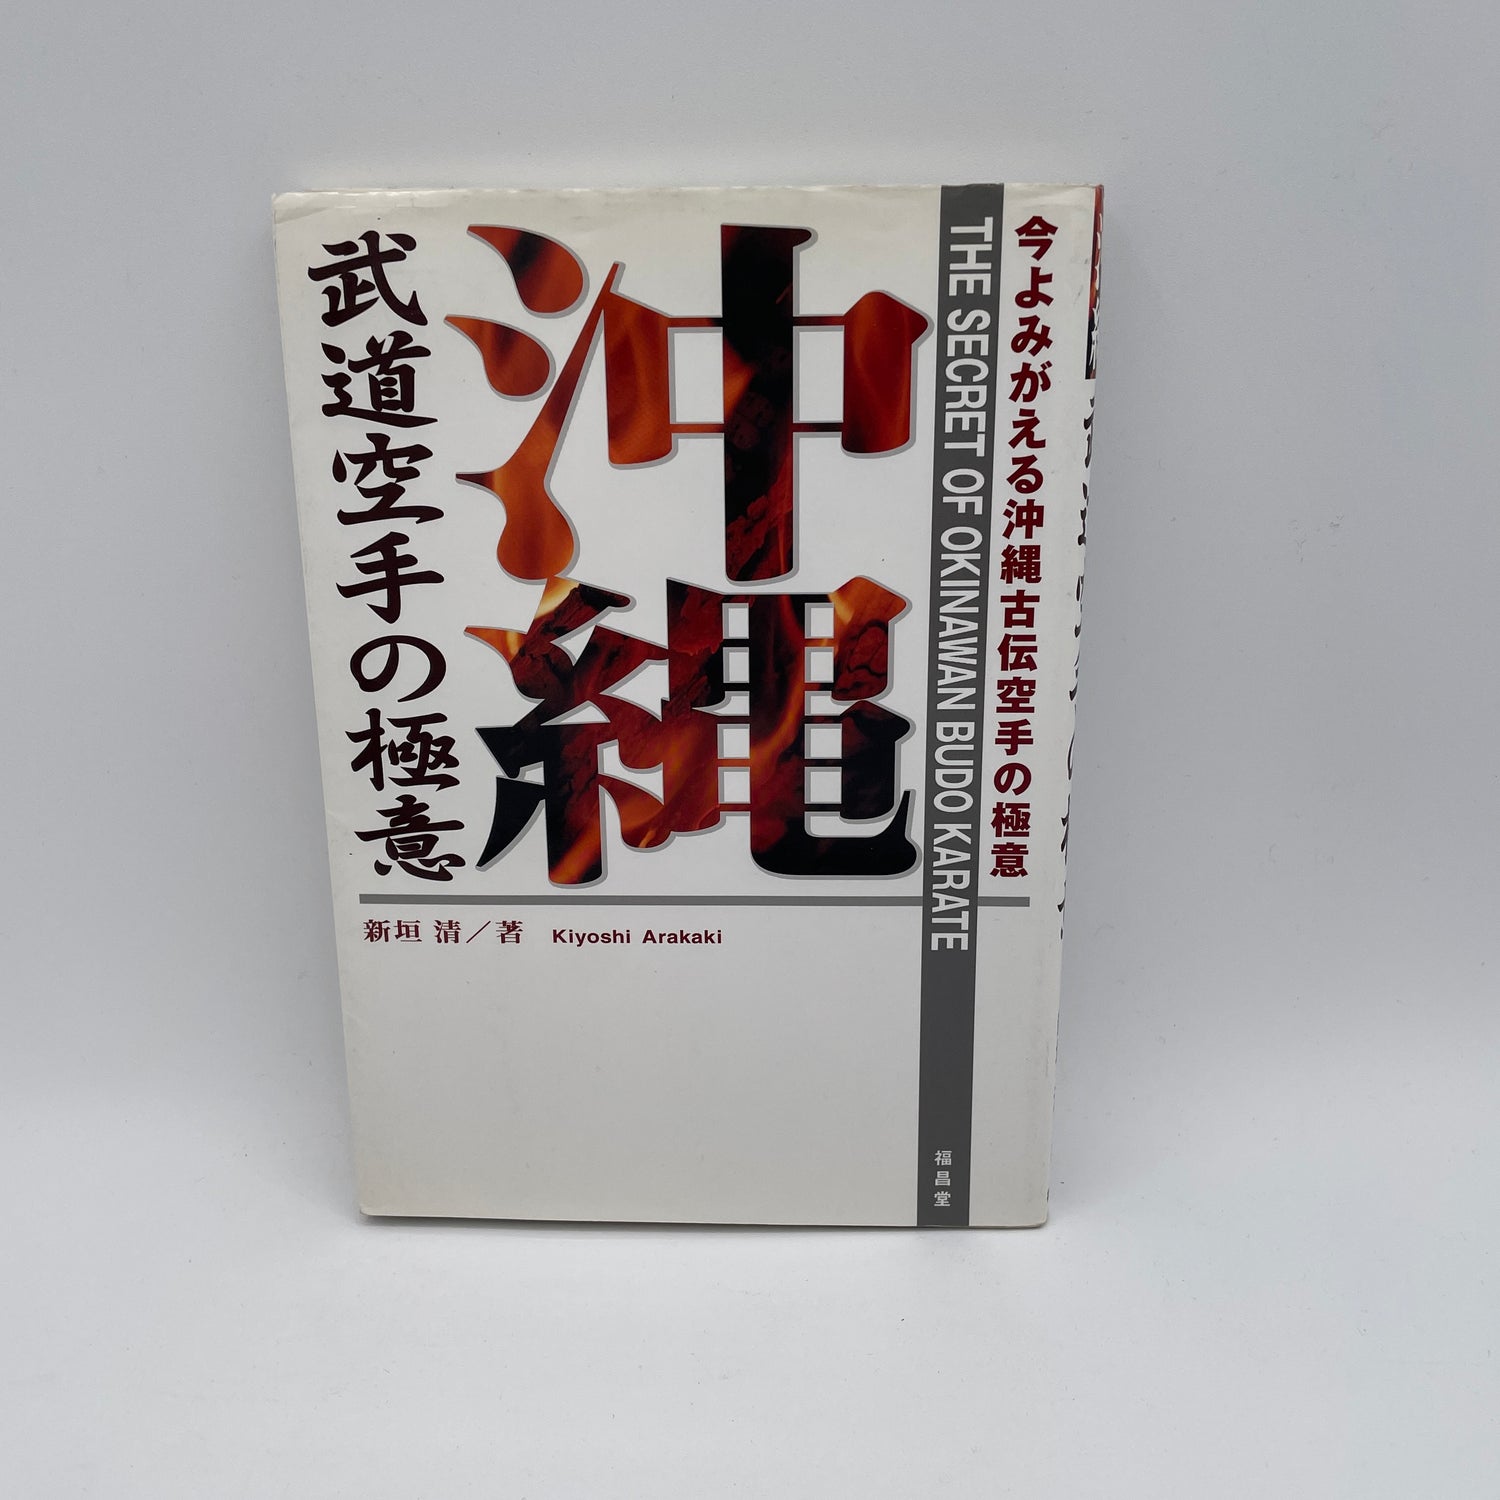 El secreto del libro de Karate Budo de Okinawa de Kiyoshi Arakaki (usado)